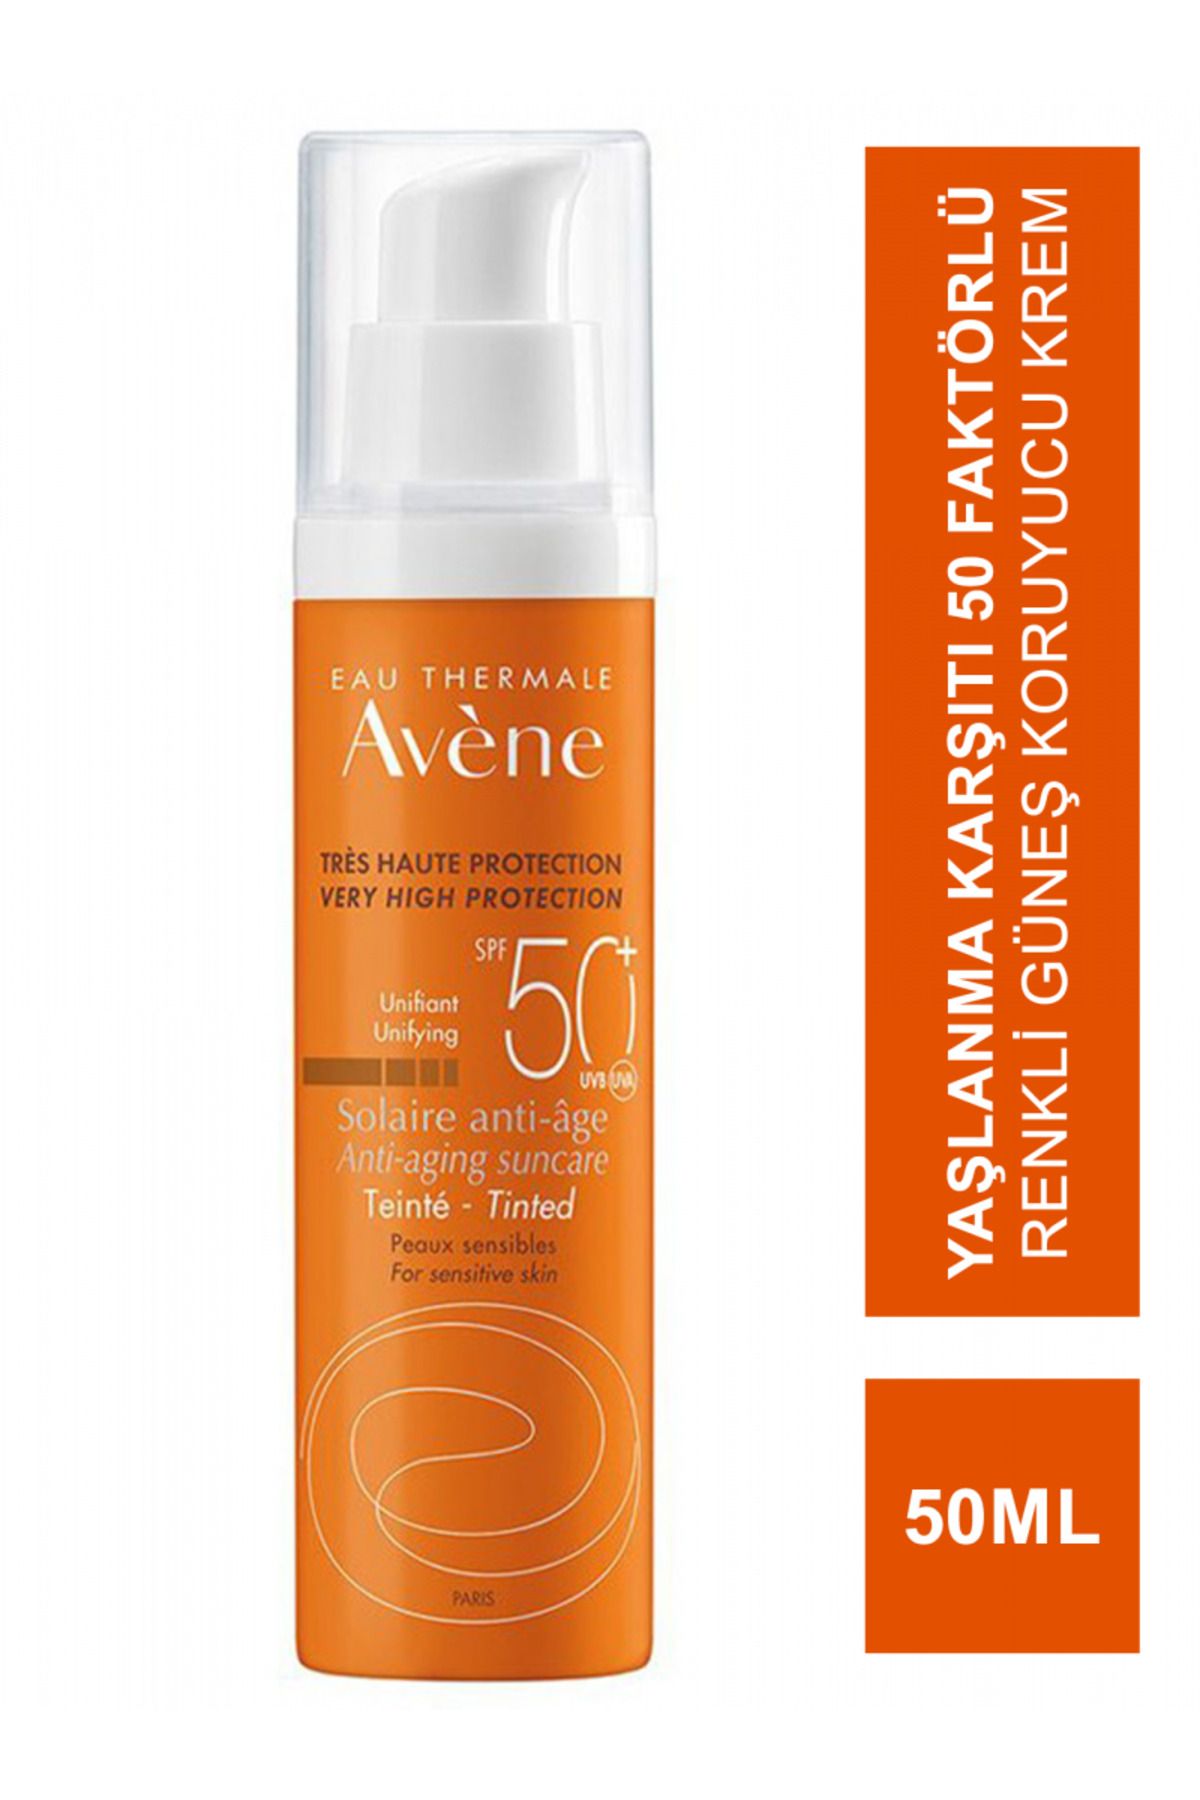 Avene Tinted Anti Age SPF 50+ Yaşlanma Karşıtı Renkli Yüksek Korumalı Güneş Kremi 50 ml